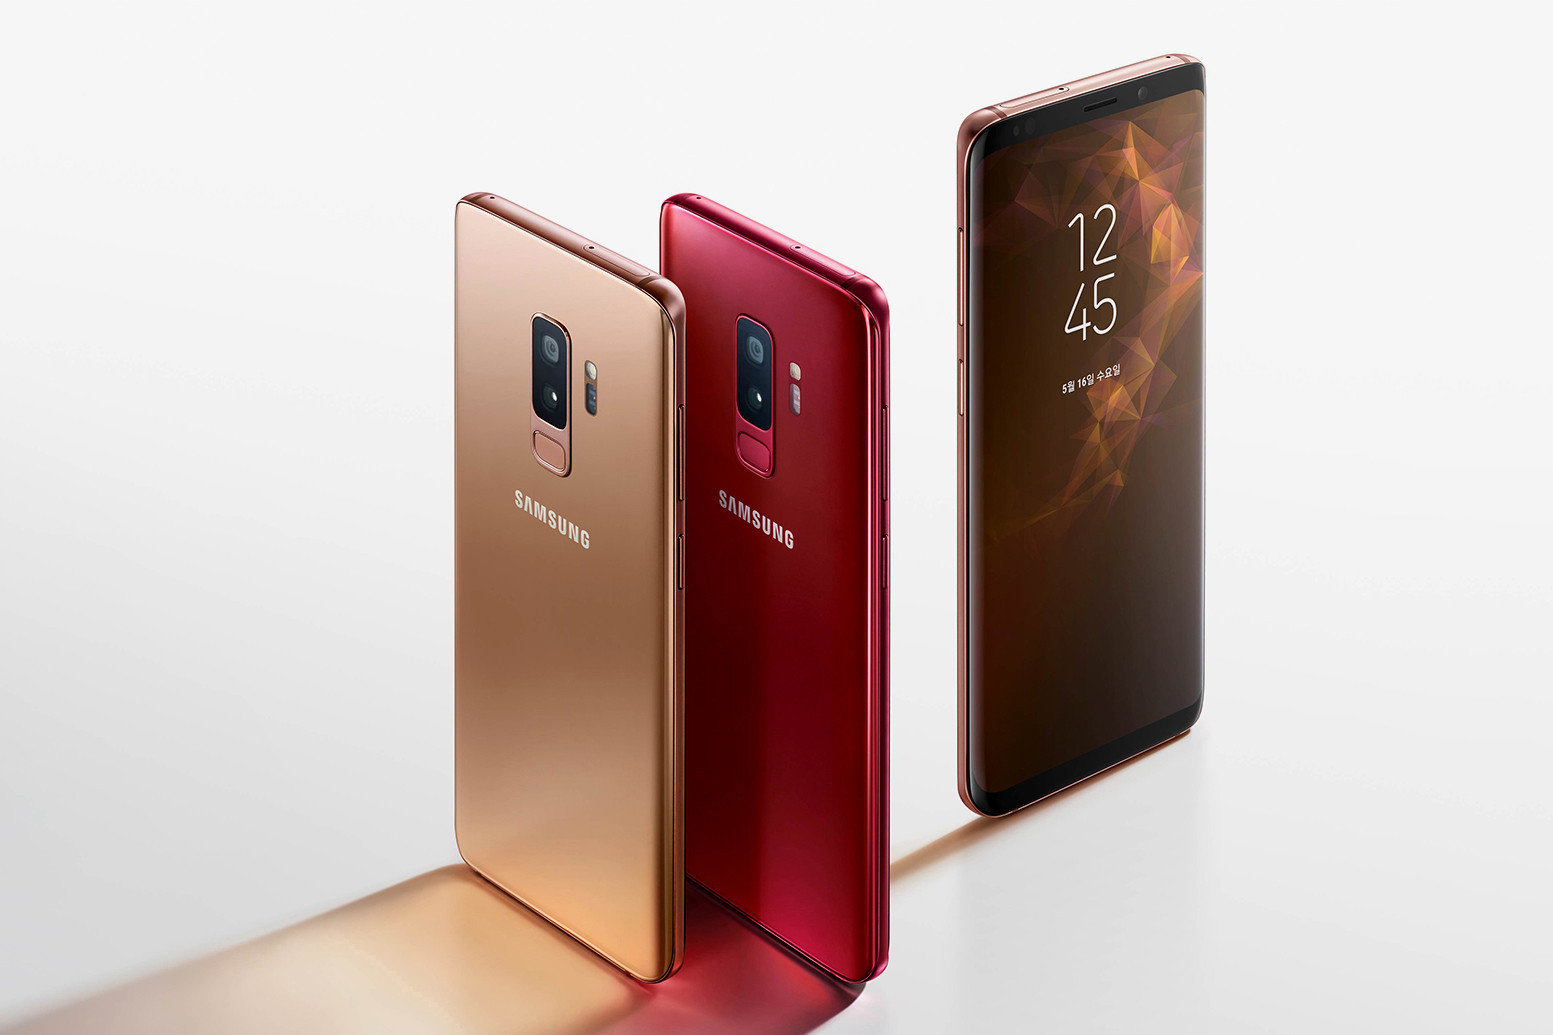 Samsung’un İlk 5G Destekli Telefonu 2019’da Aramızda